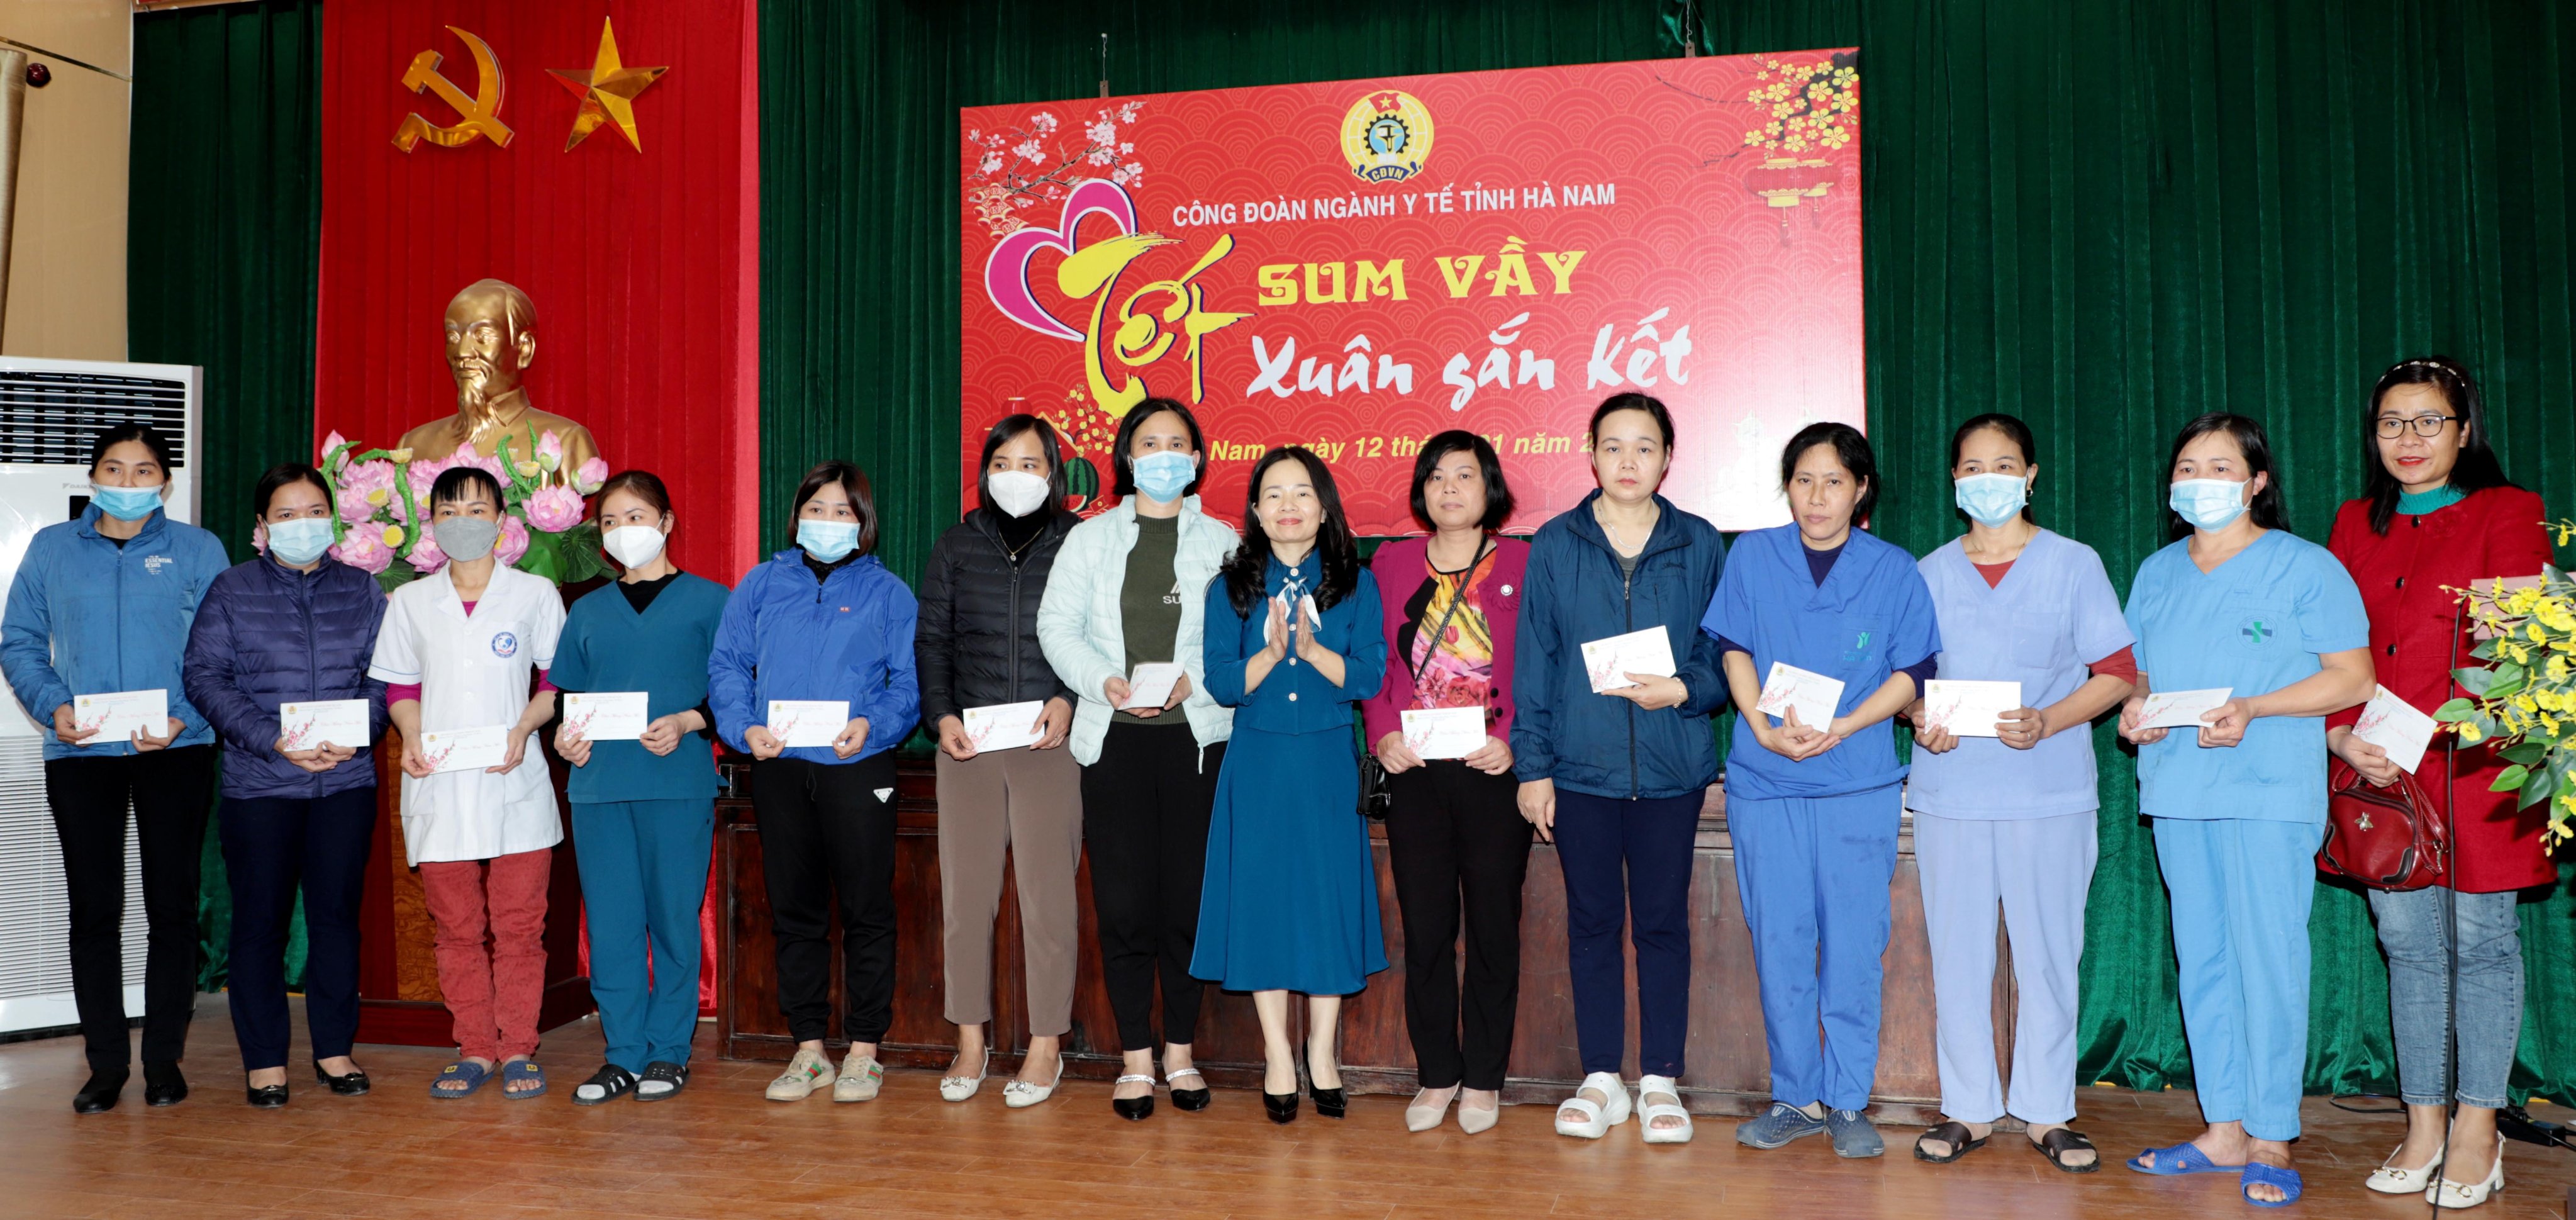 5 Bà Lục Việt Hoa - Chủ tịch Công đoàn Ngành Y tế tặng quà cho các đoàn viên công đoàn có hoàn cảnh khó khăn trong Chương trình “Tết sum vầy - Xuân gắn kết”.jpg